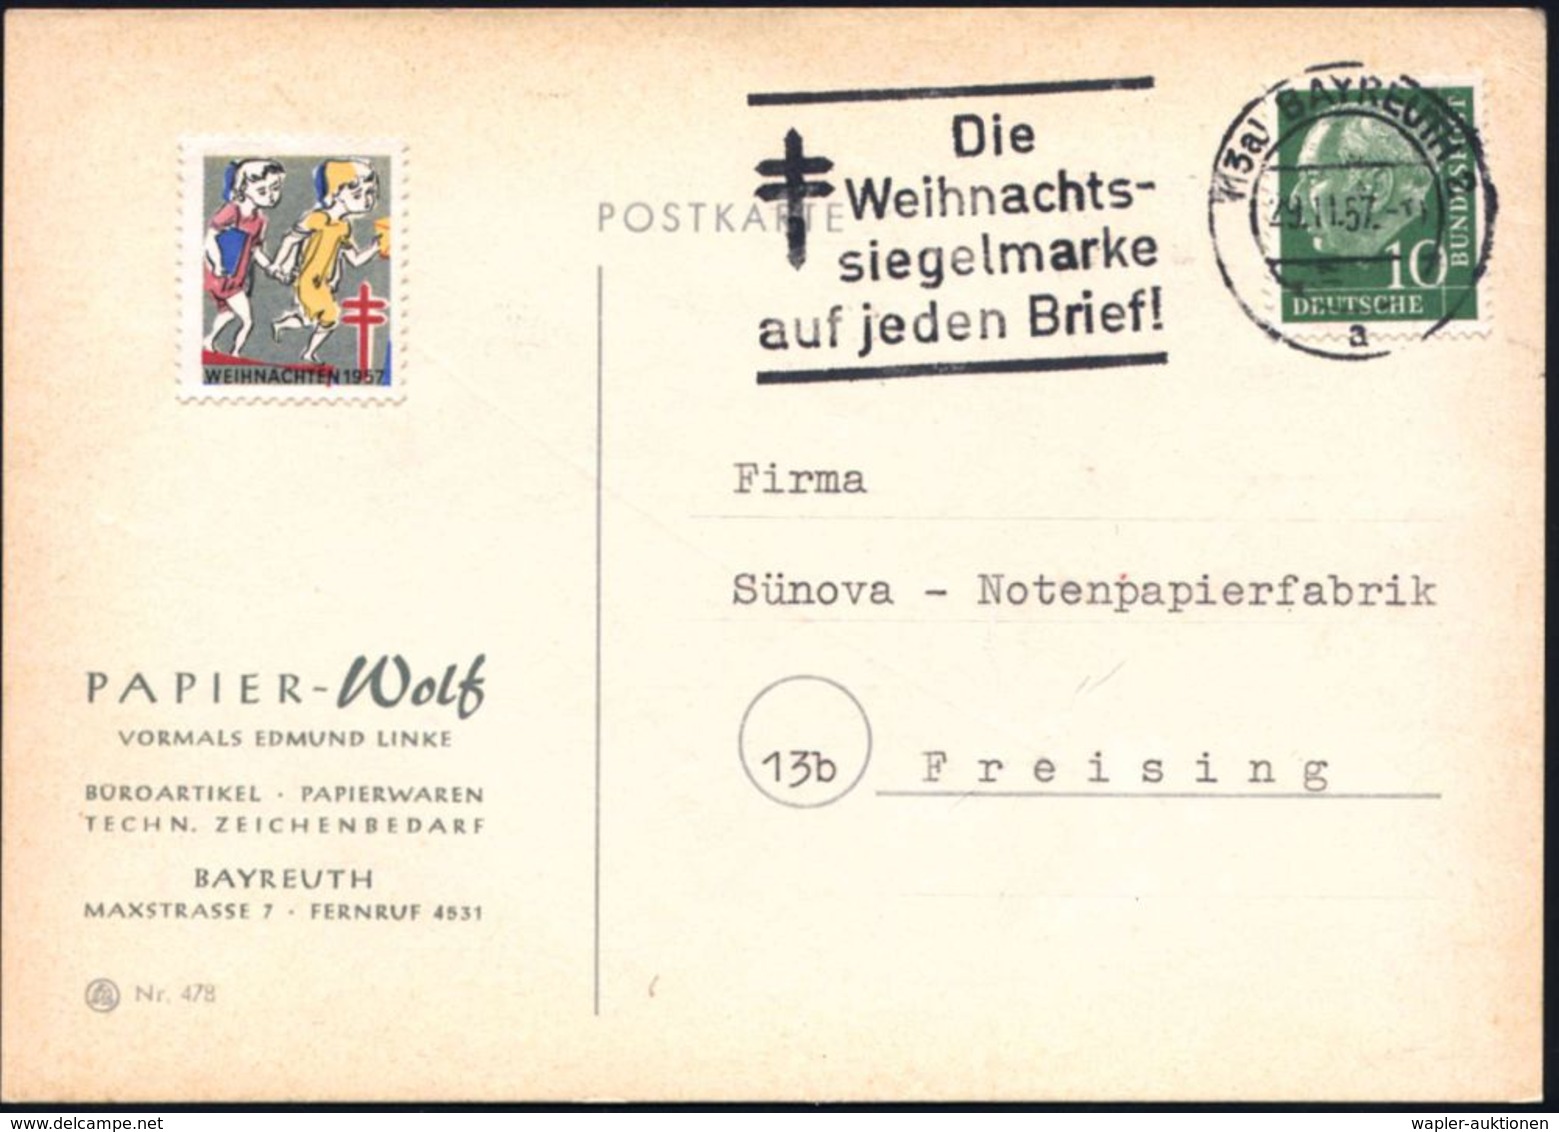 TUBERKULOSE / TBC-VORSORGE : (13a) BAYREUTH 2/ A/ Die/ Weihnachts-/ Siegelmarke/ Auf Jeden Brief! 1957 (29.11.) MWSt (=  - Maladies